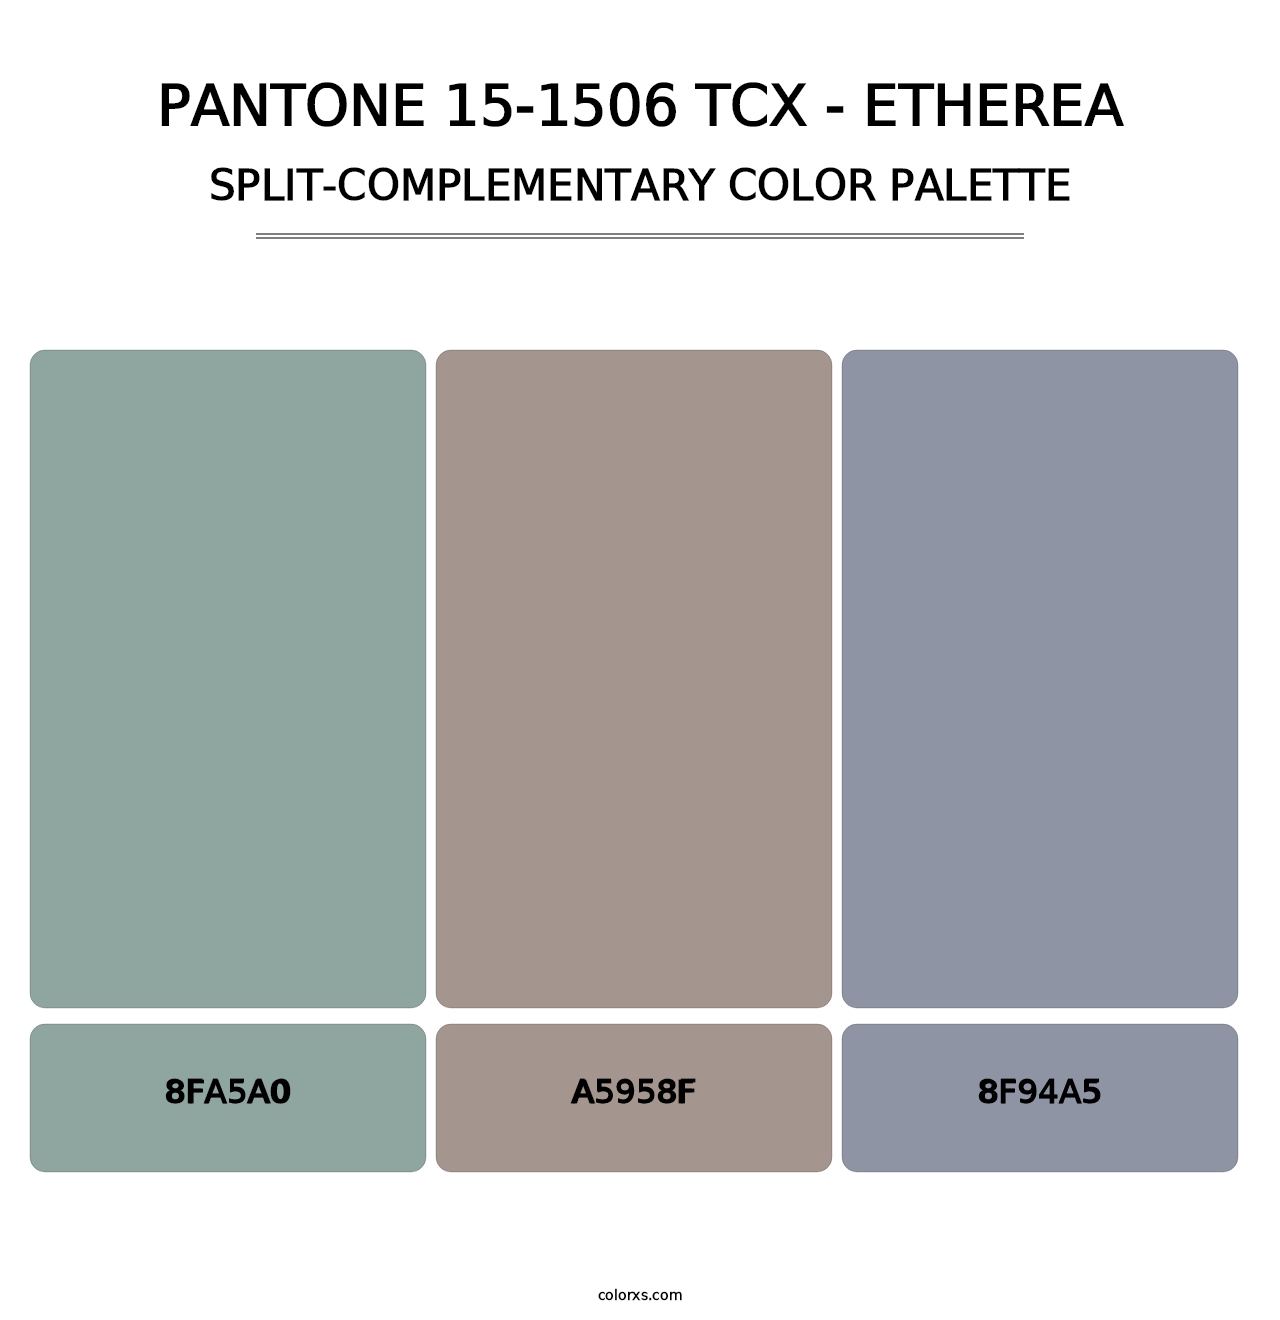 PANTONE 15-1506 TCX - Etherea - Split-Complementary Color Palette